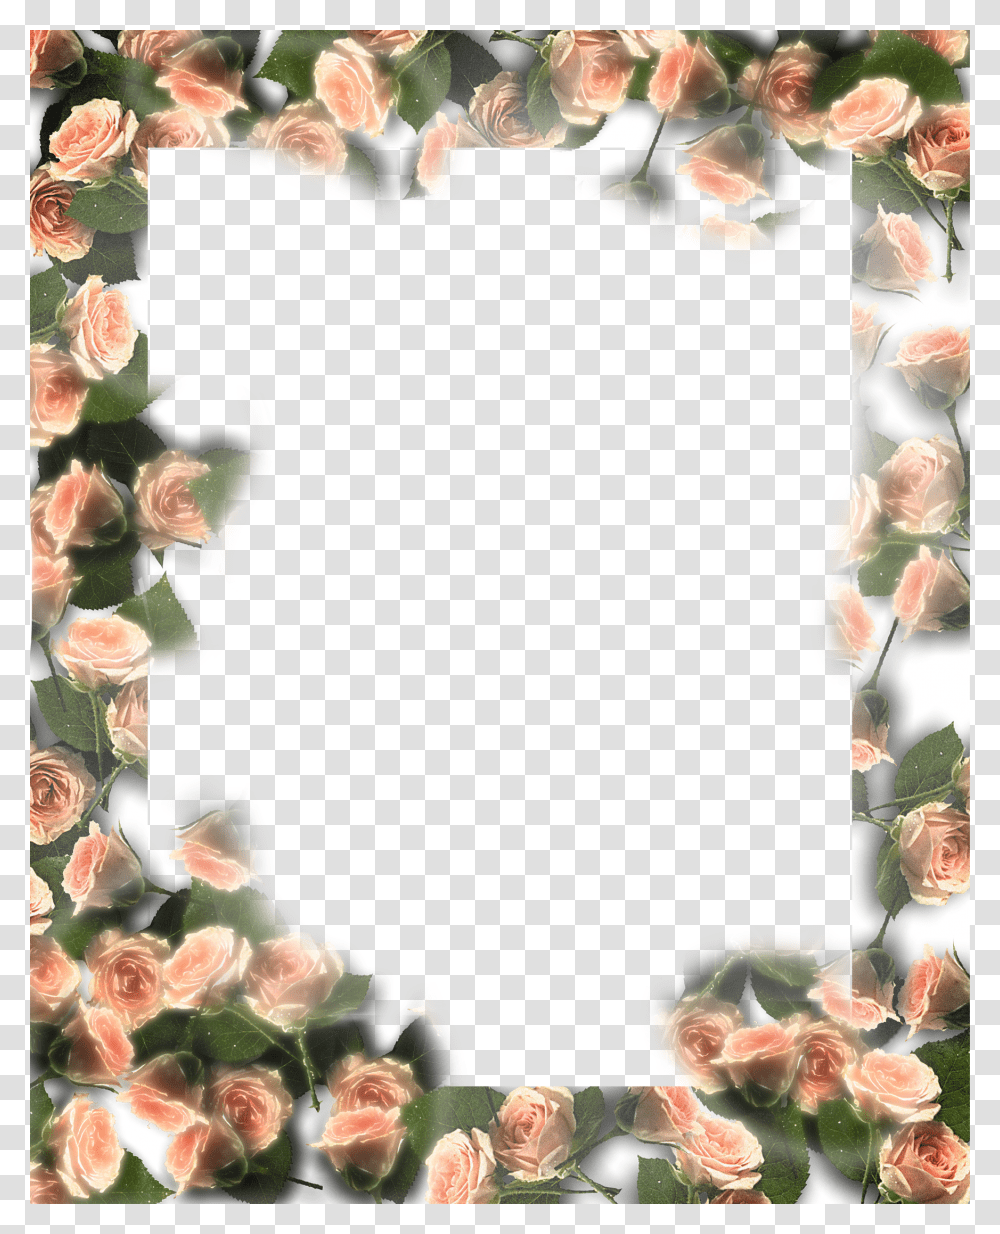 Floral Frame, Flower, Plant, Blossom, Flower Arrangement Transparent Png